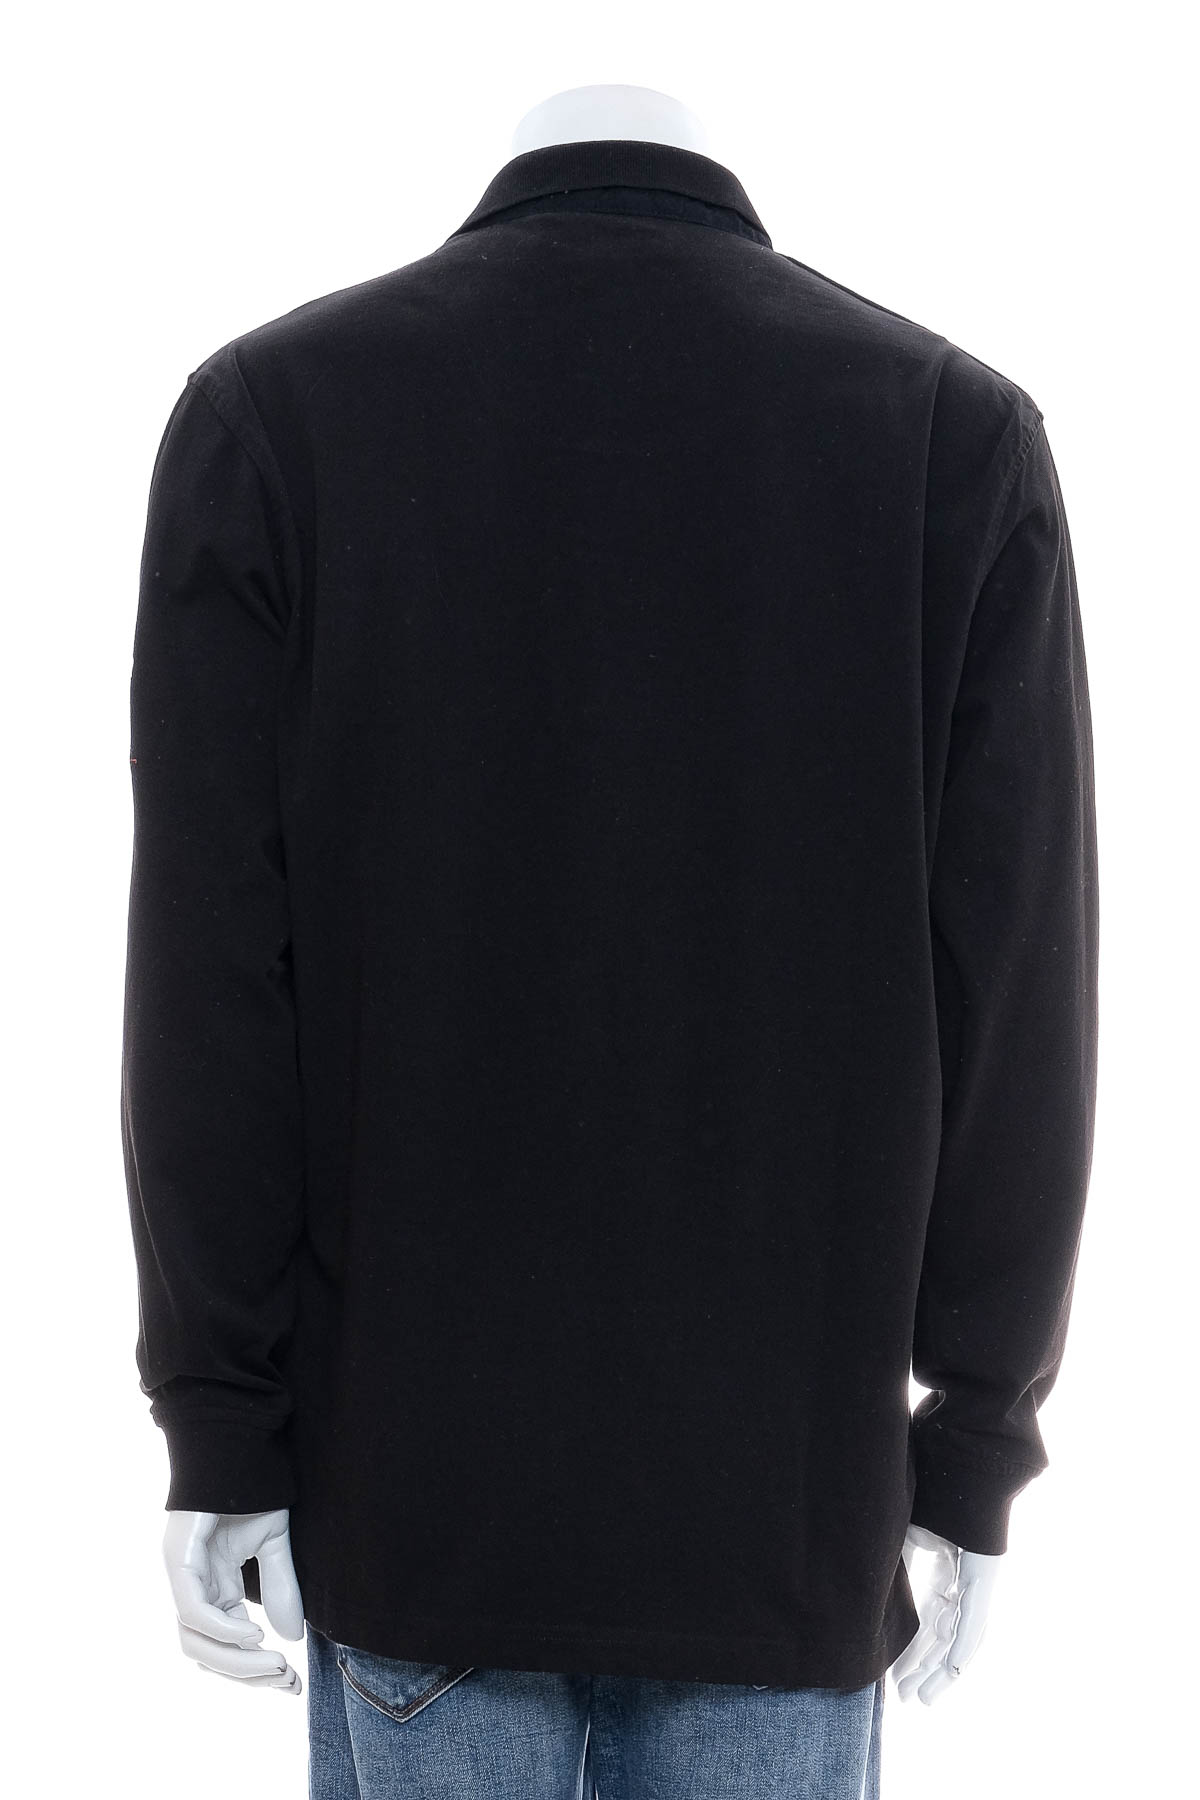 Ανδρική μπλούζα - Jim Spencer - 1